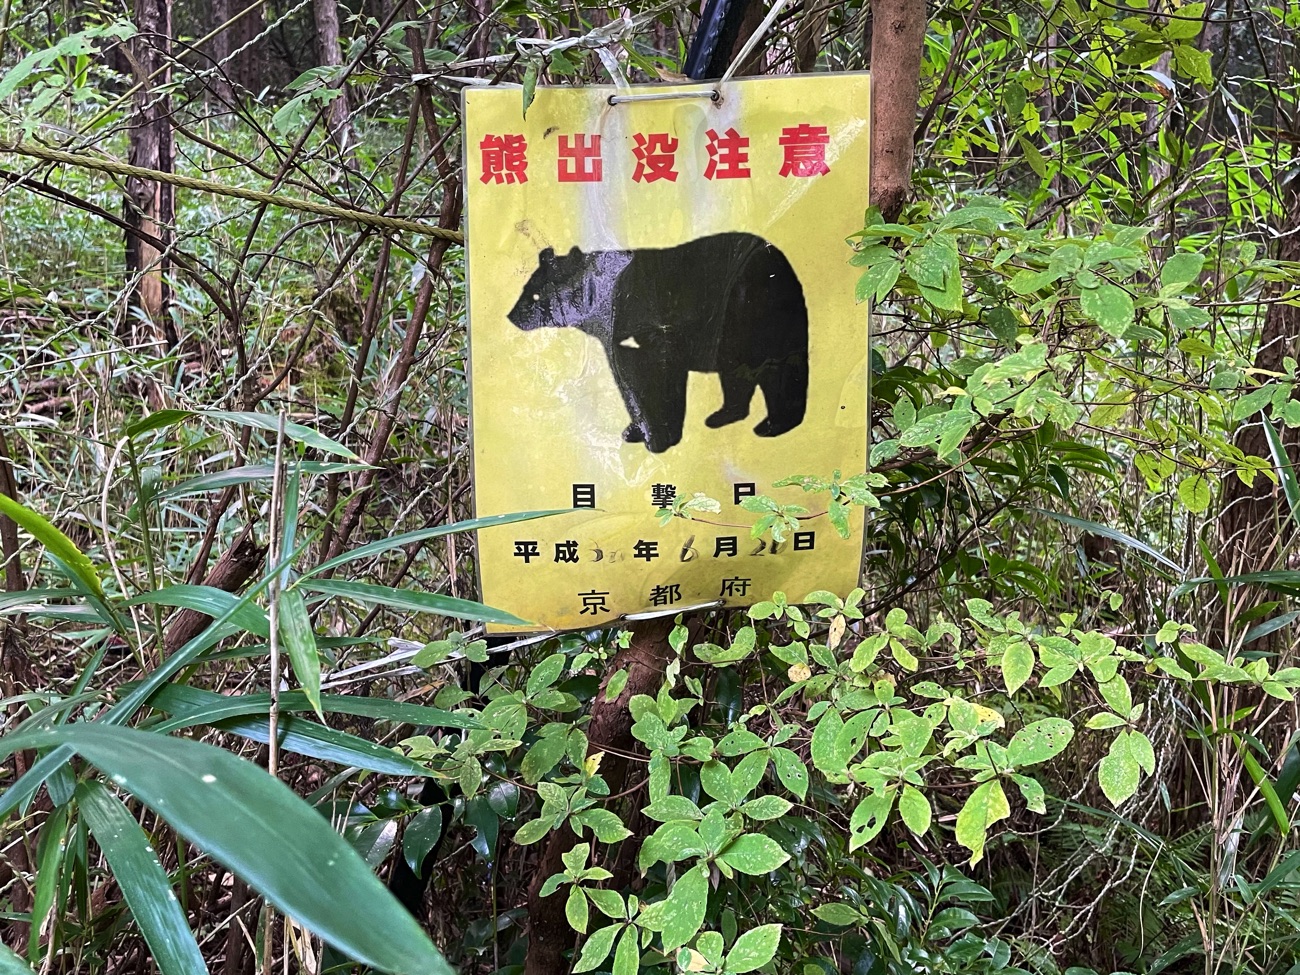 「熊出没注意」の看板